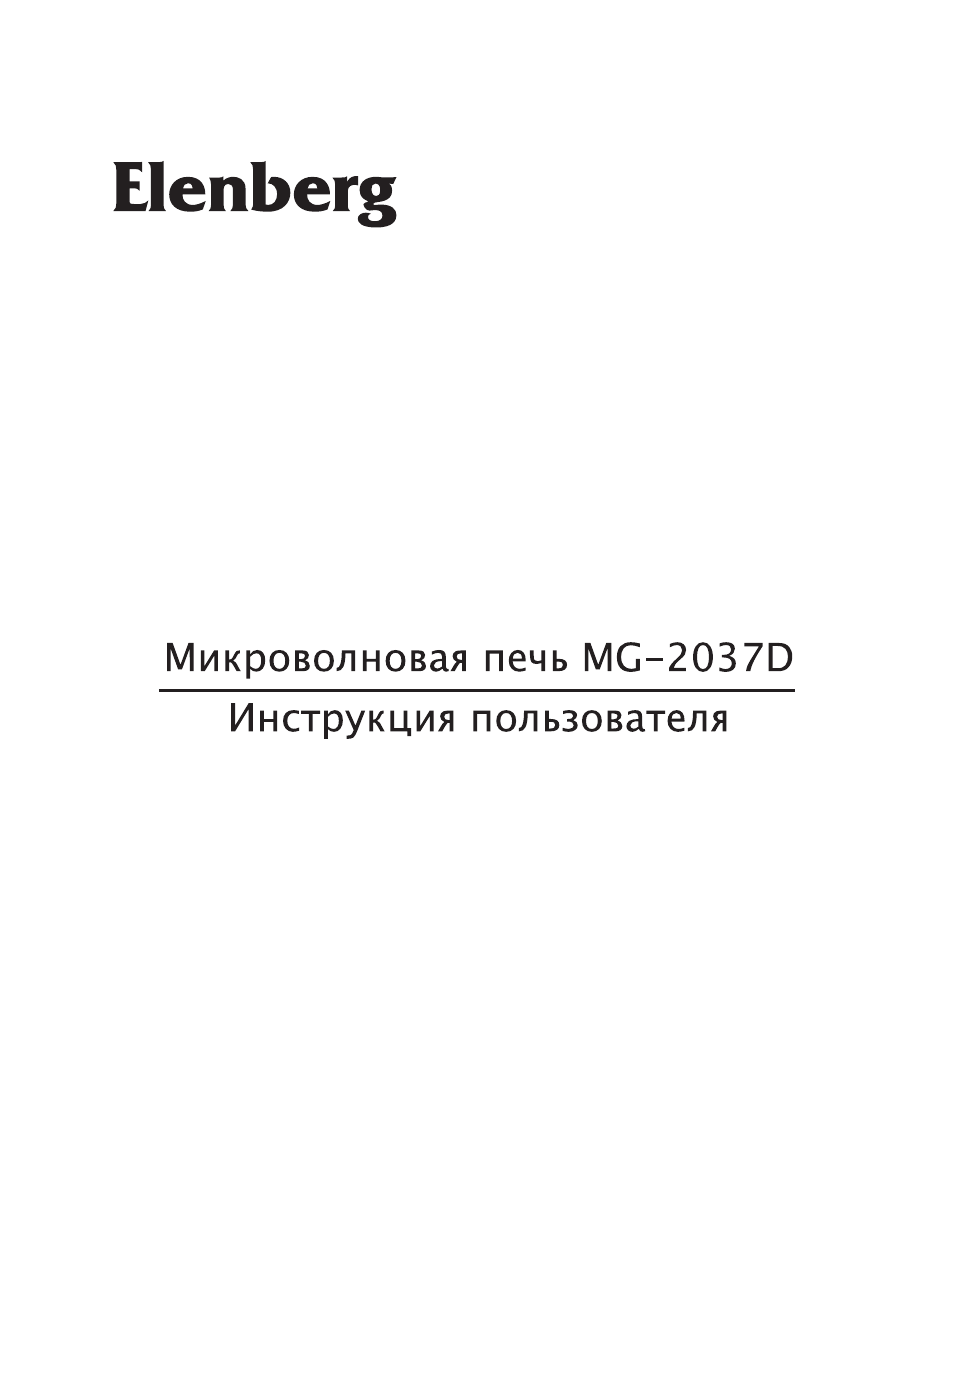 MG-2037D